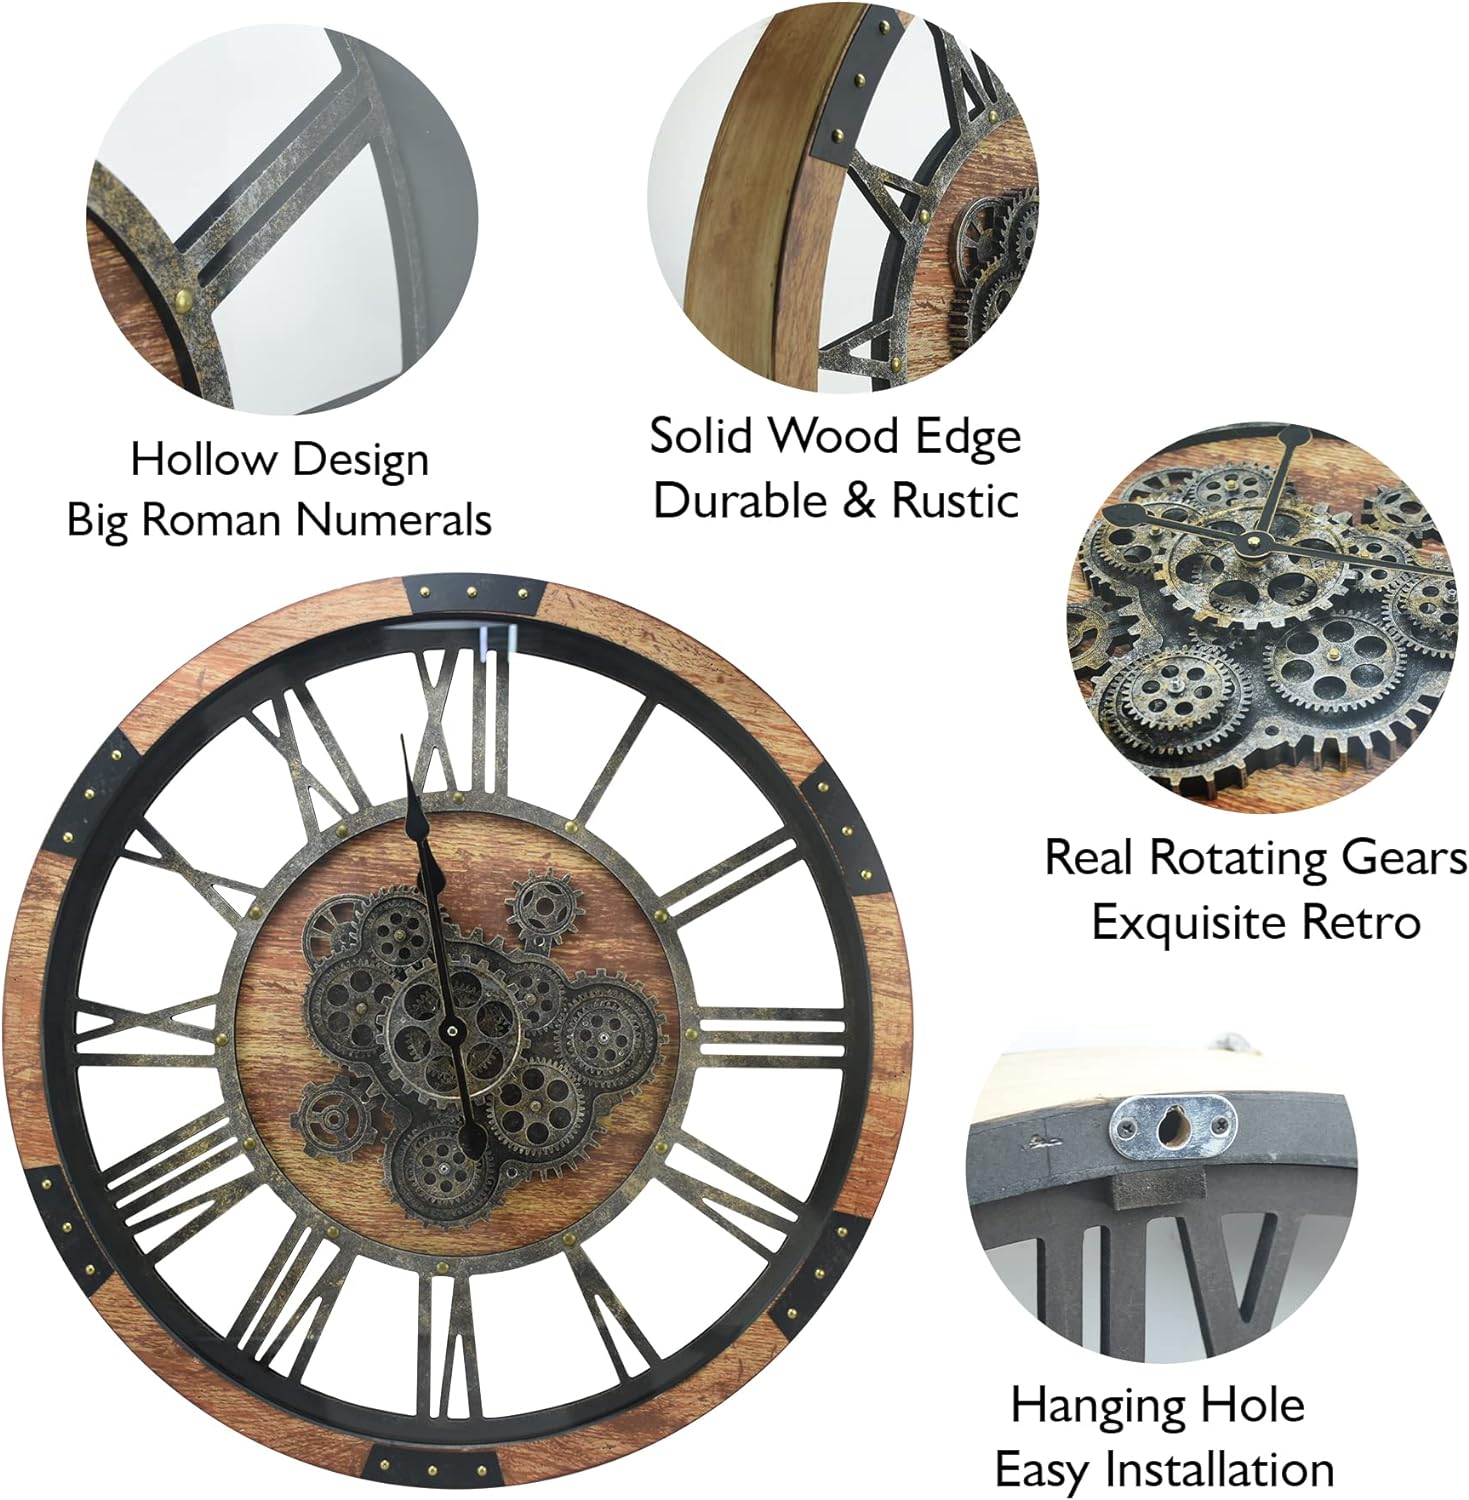  Reloj de pared vintage con diseño de esqueleto de